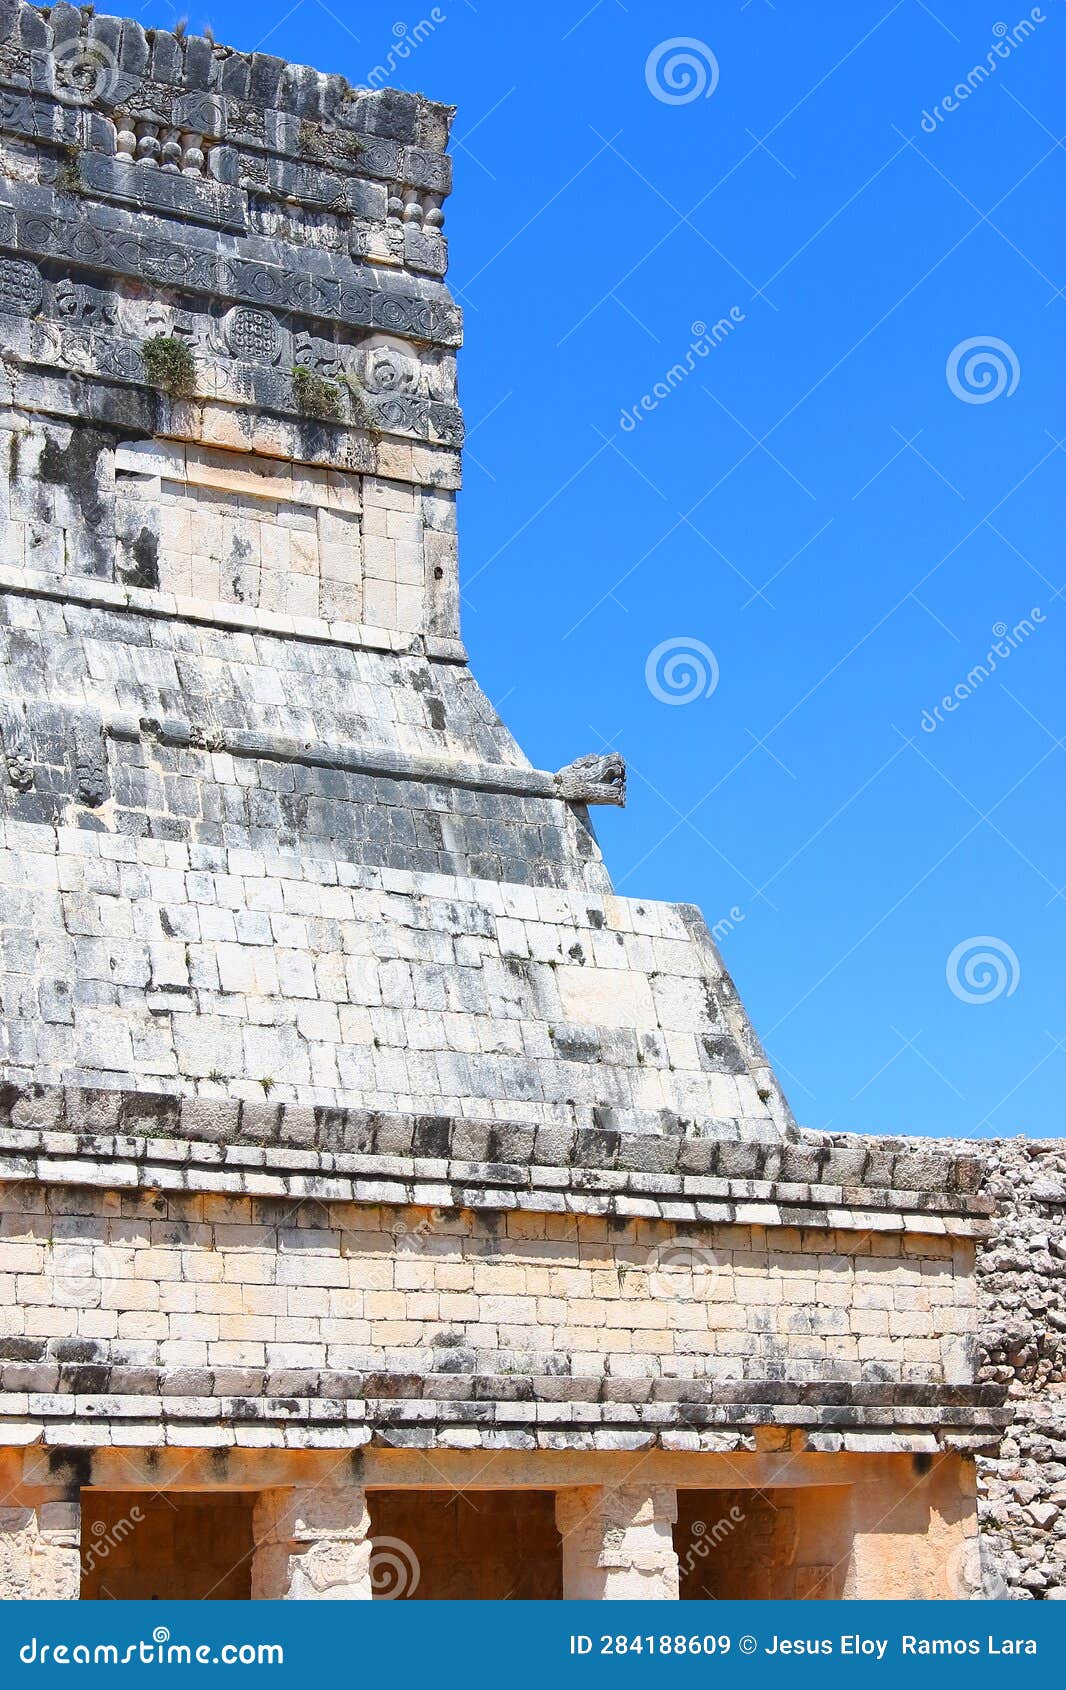 chichenitza mayan pyramids in yucatan, mexico xx